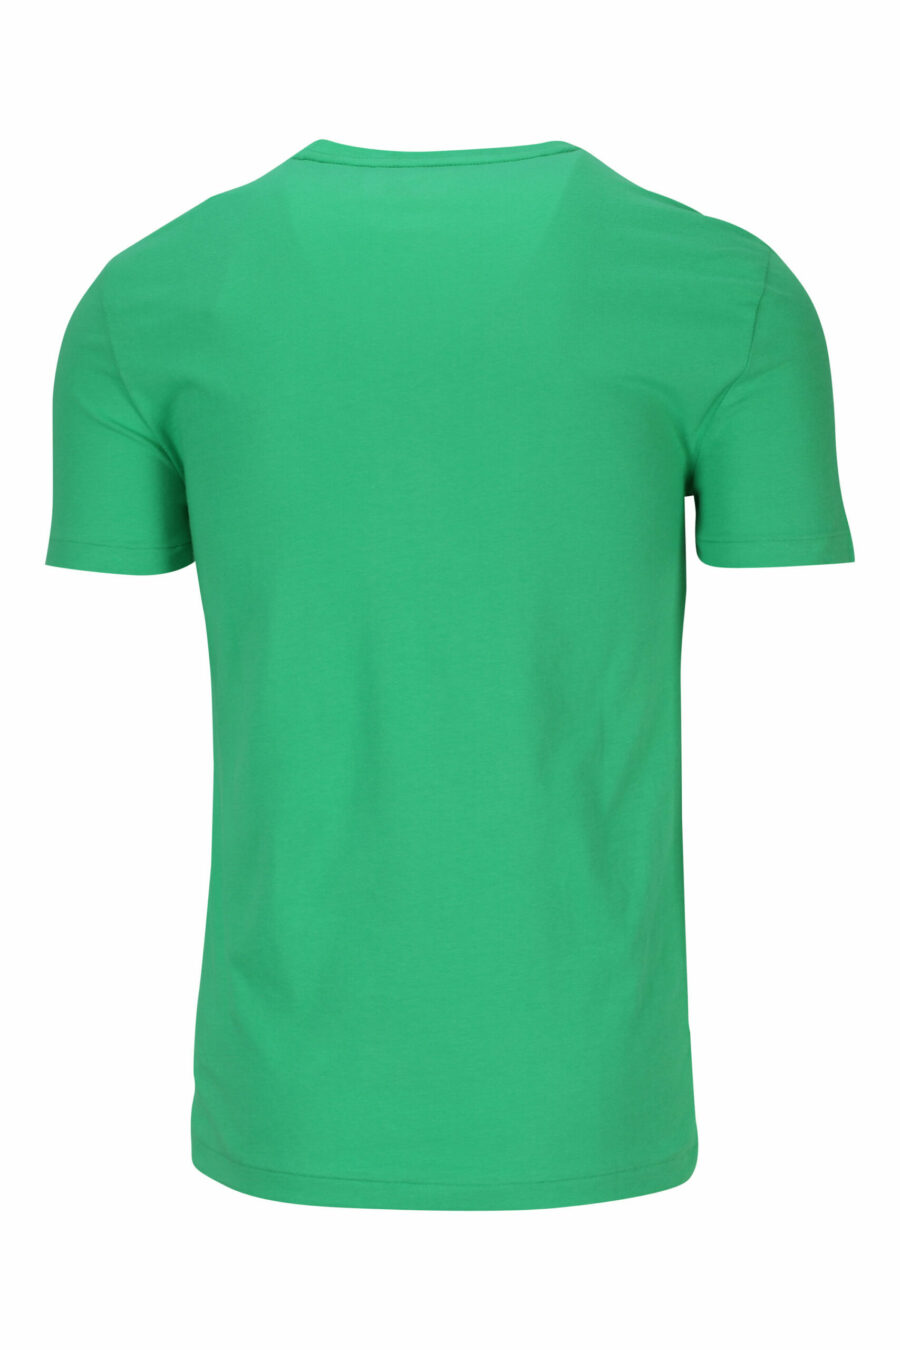 Camiseta verde y amarilla con minilogo "polo" - 3616535653825 1 scaled